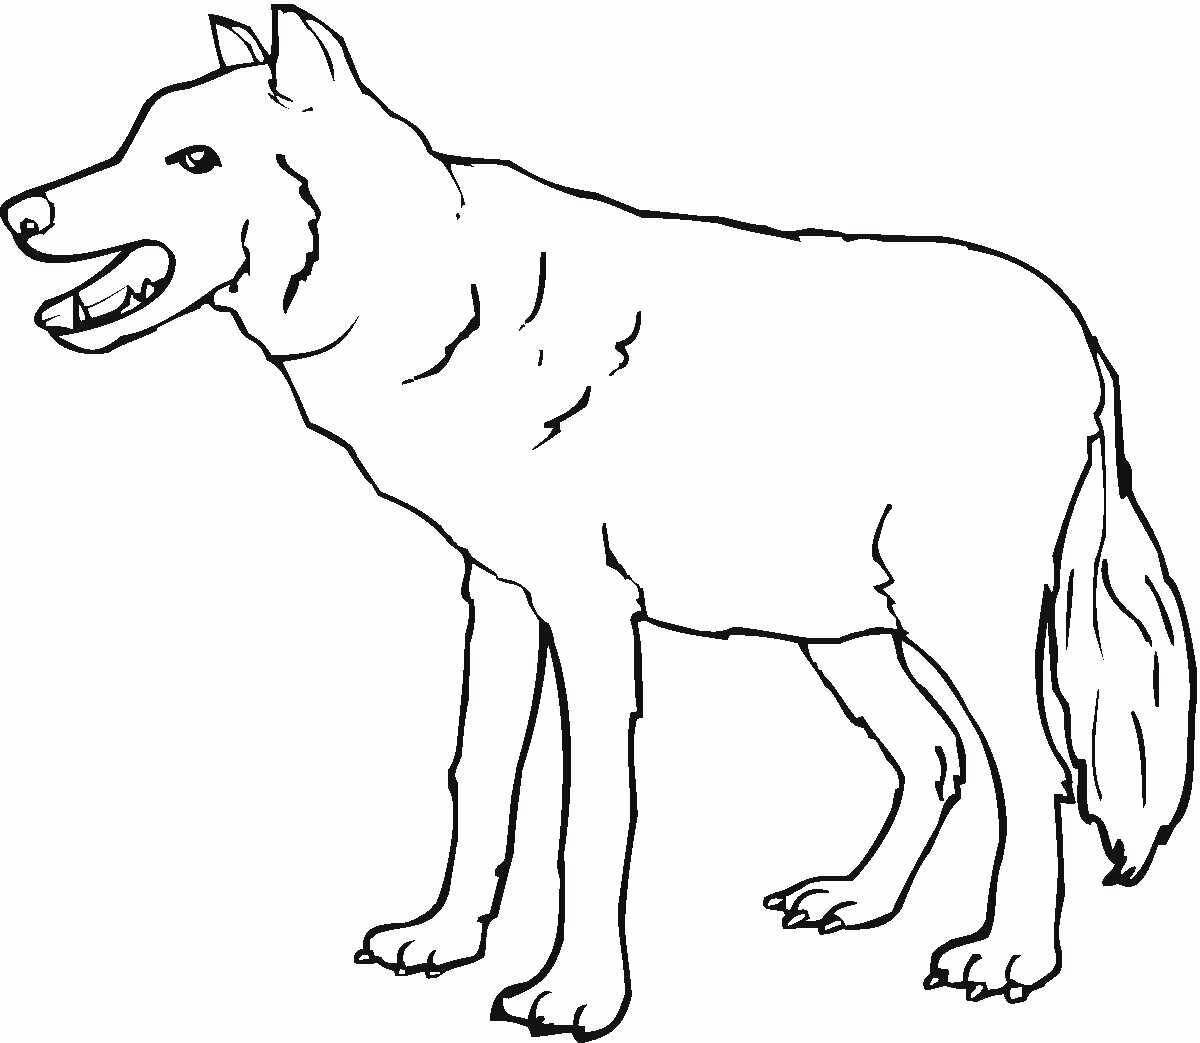 Экзотическая раскраска волк для детей 3-4 лет